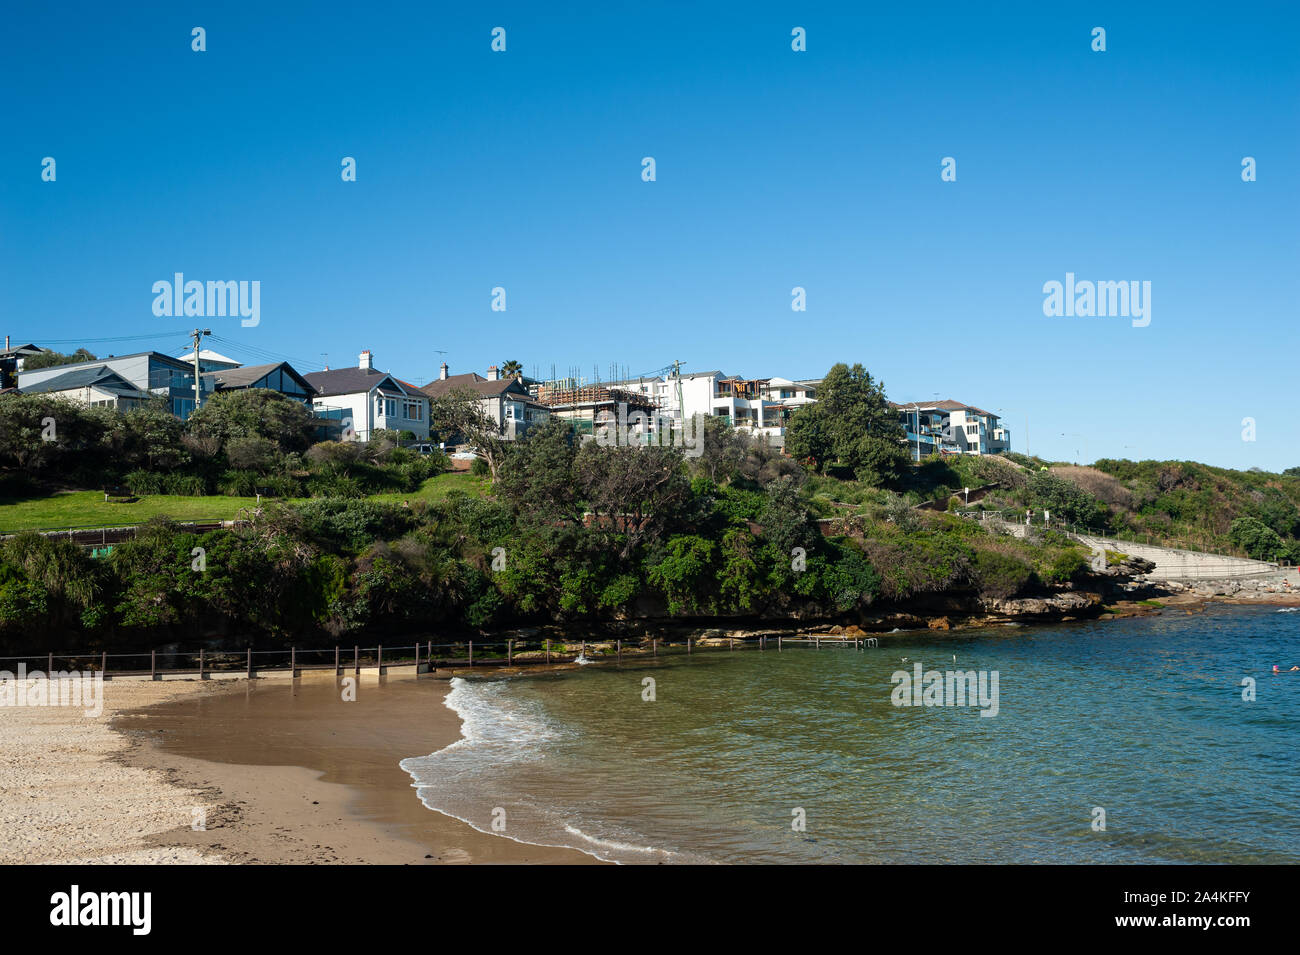 24.09.2019, Sydney, New South Wales, Australia - Vista de Clovelly Playa bajo un cielo azul claro con edificios en el fondo. Foto de stock